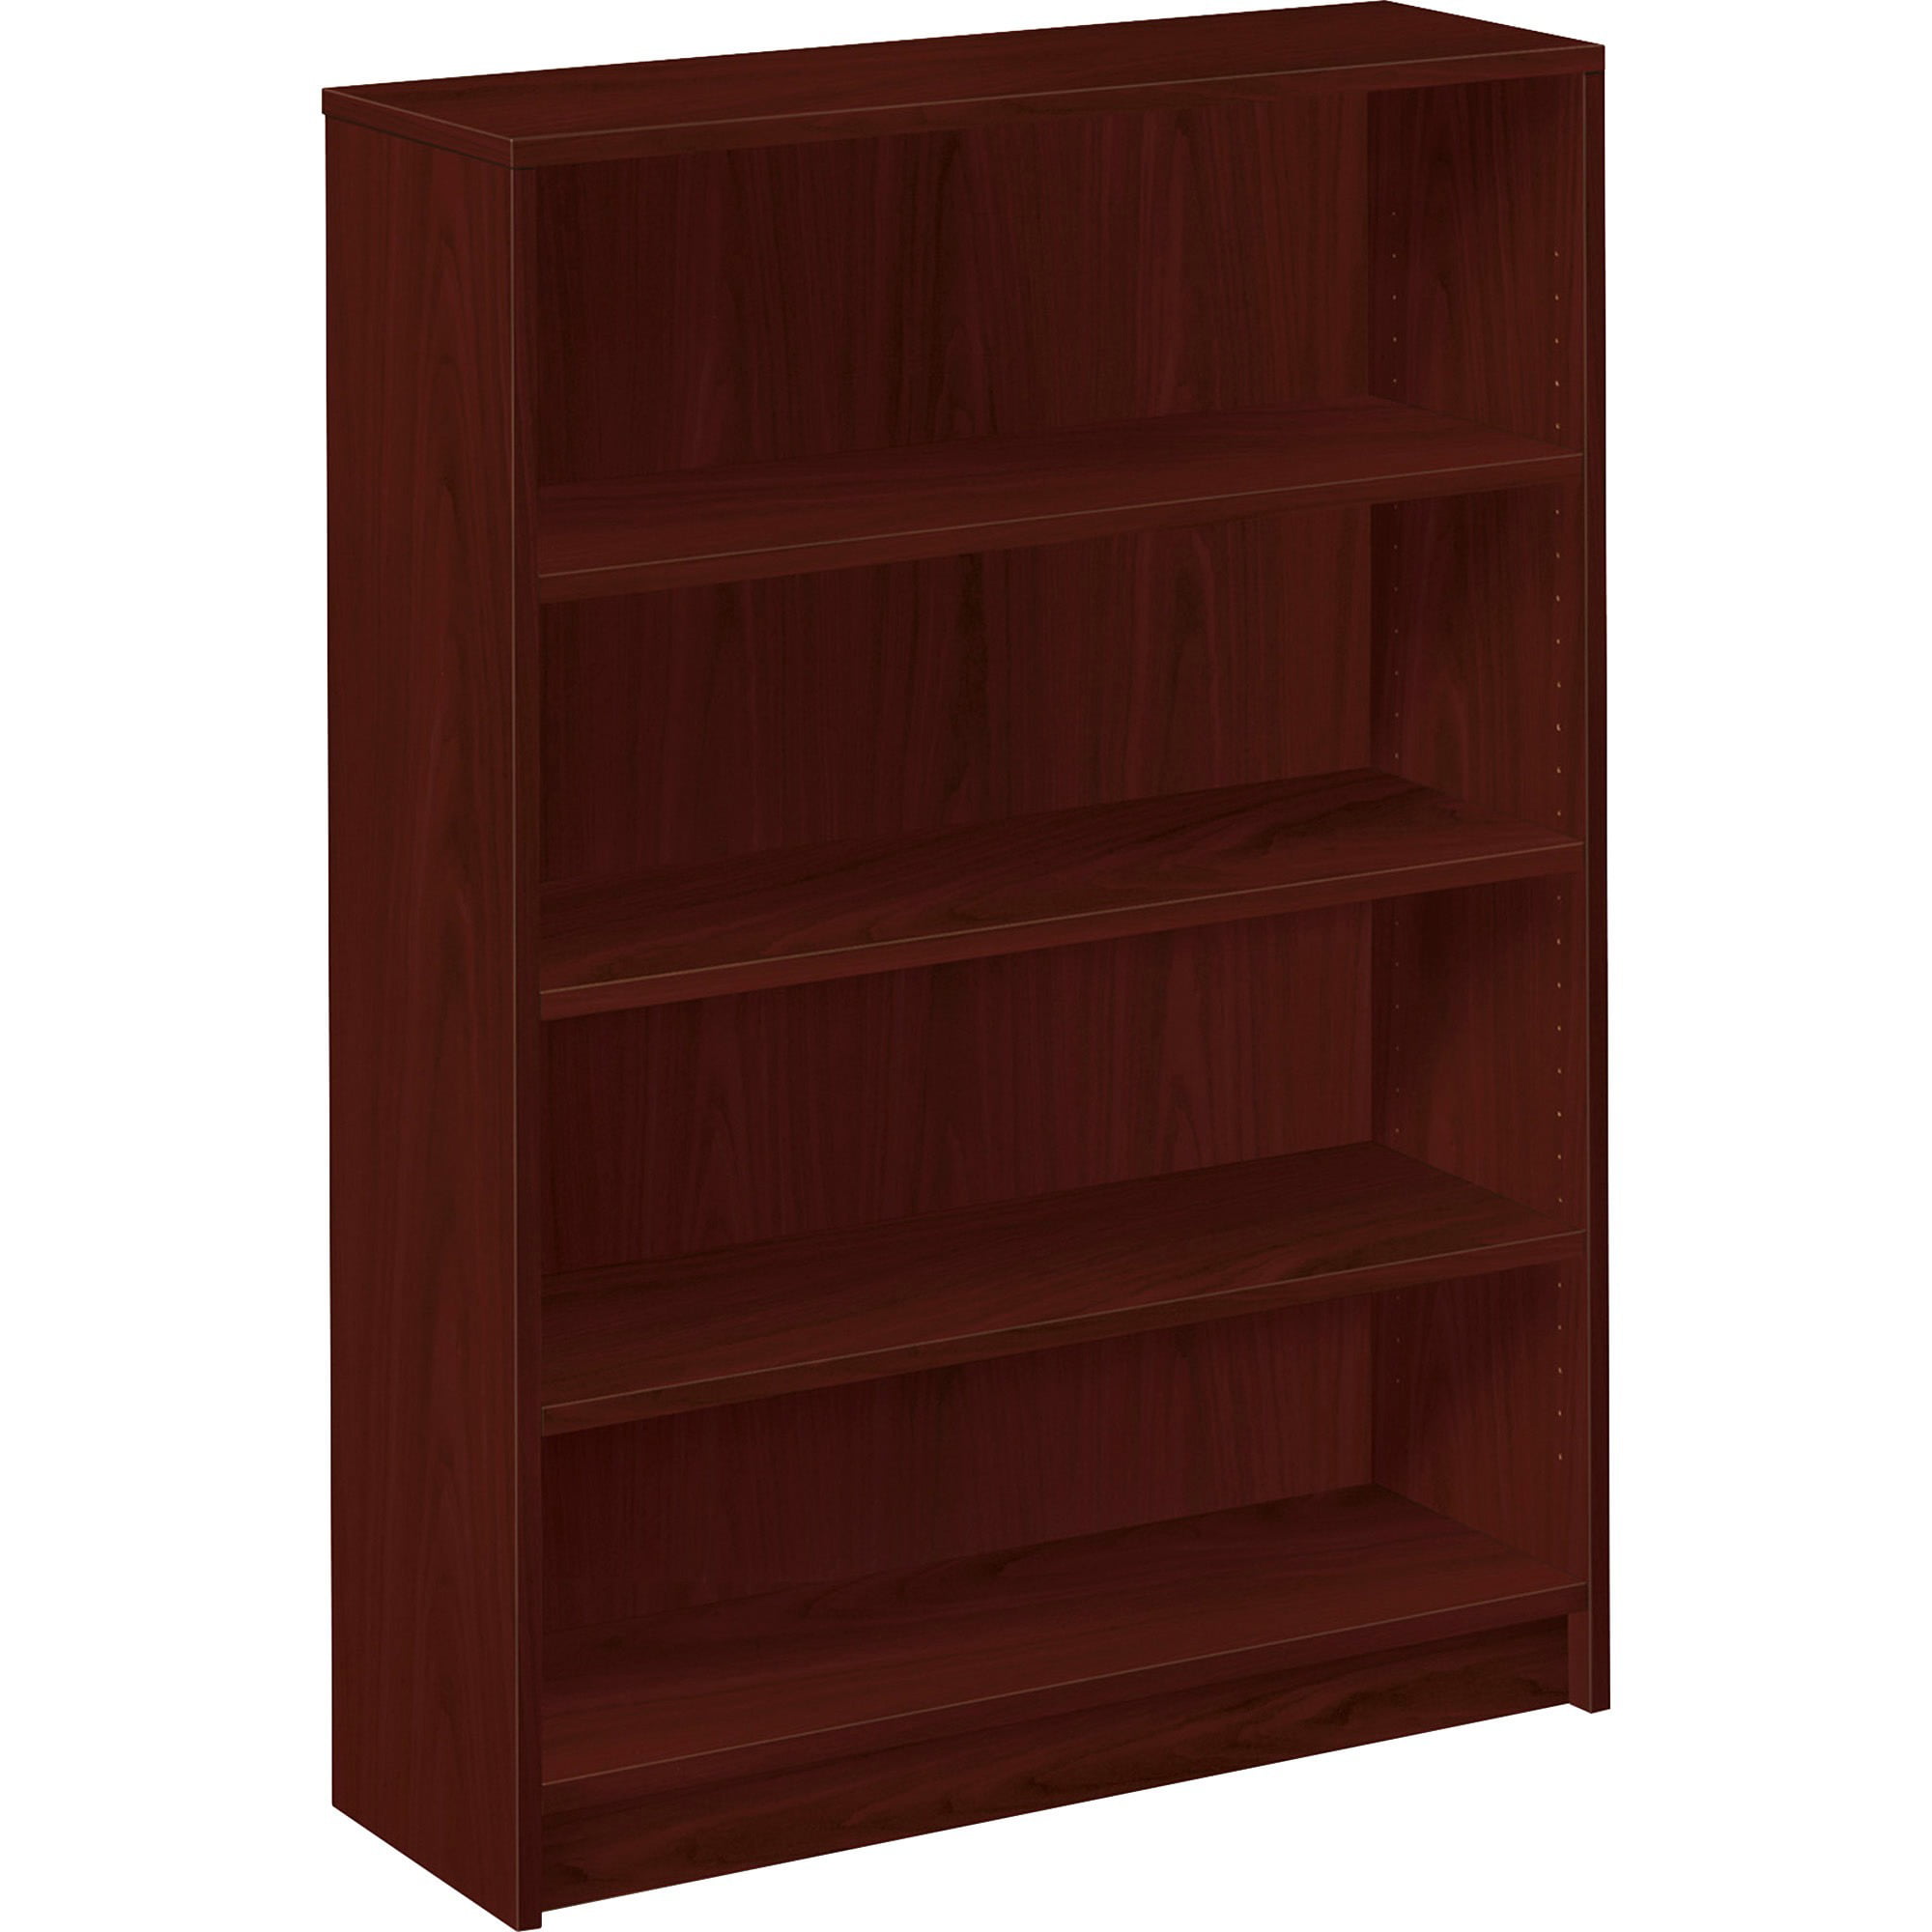 Details about   Hodedah 4 Shelf 8 Door Bookcase in Mahogany 